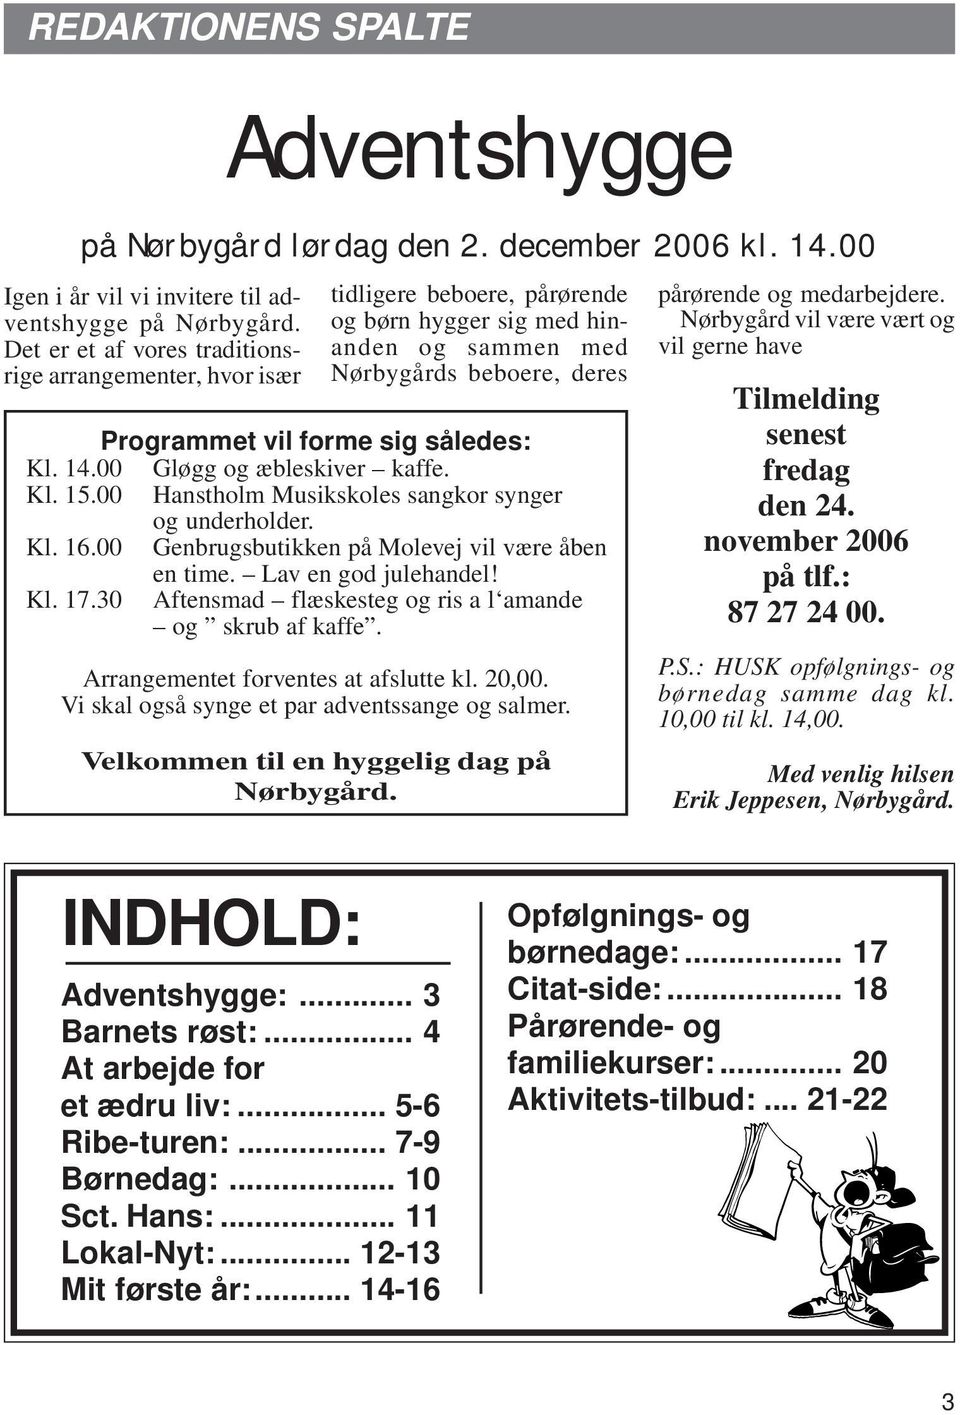 14.00 Gløgg og æbleskiver kaffe. Kl. 15.00 Hanstholm Musikskoles sangkor synger og underholder. Kl. 16.00 Genbrugsbutikken på Molevej vil være åben en time. Lav en god julehandel! Kl. 17.